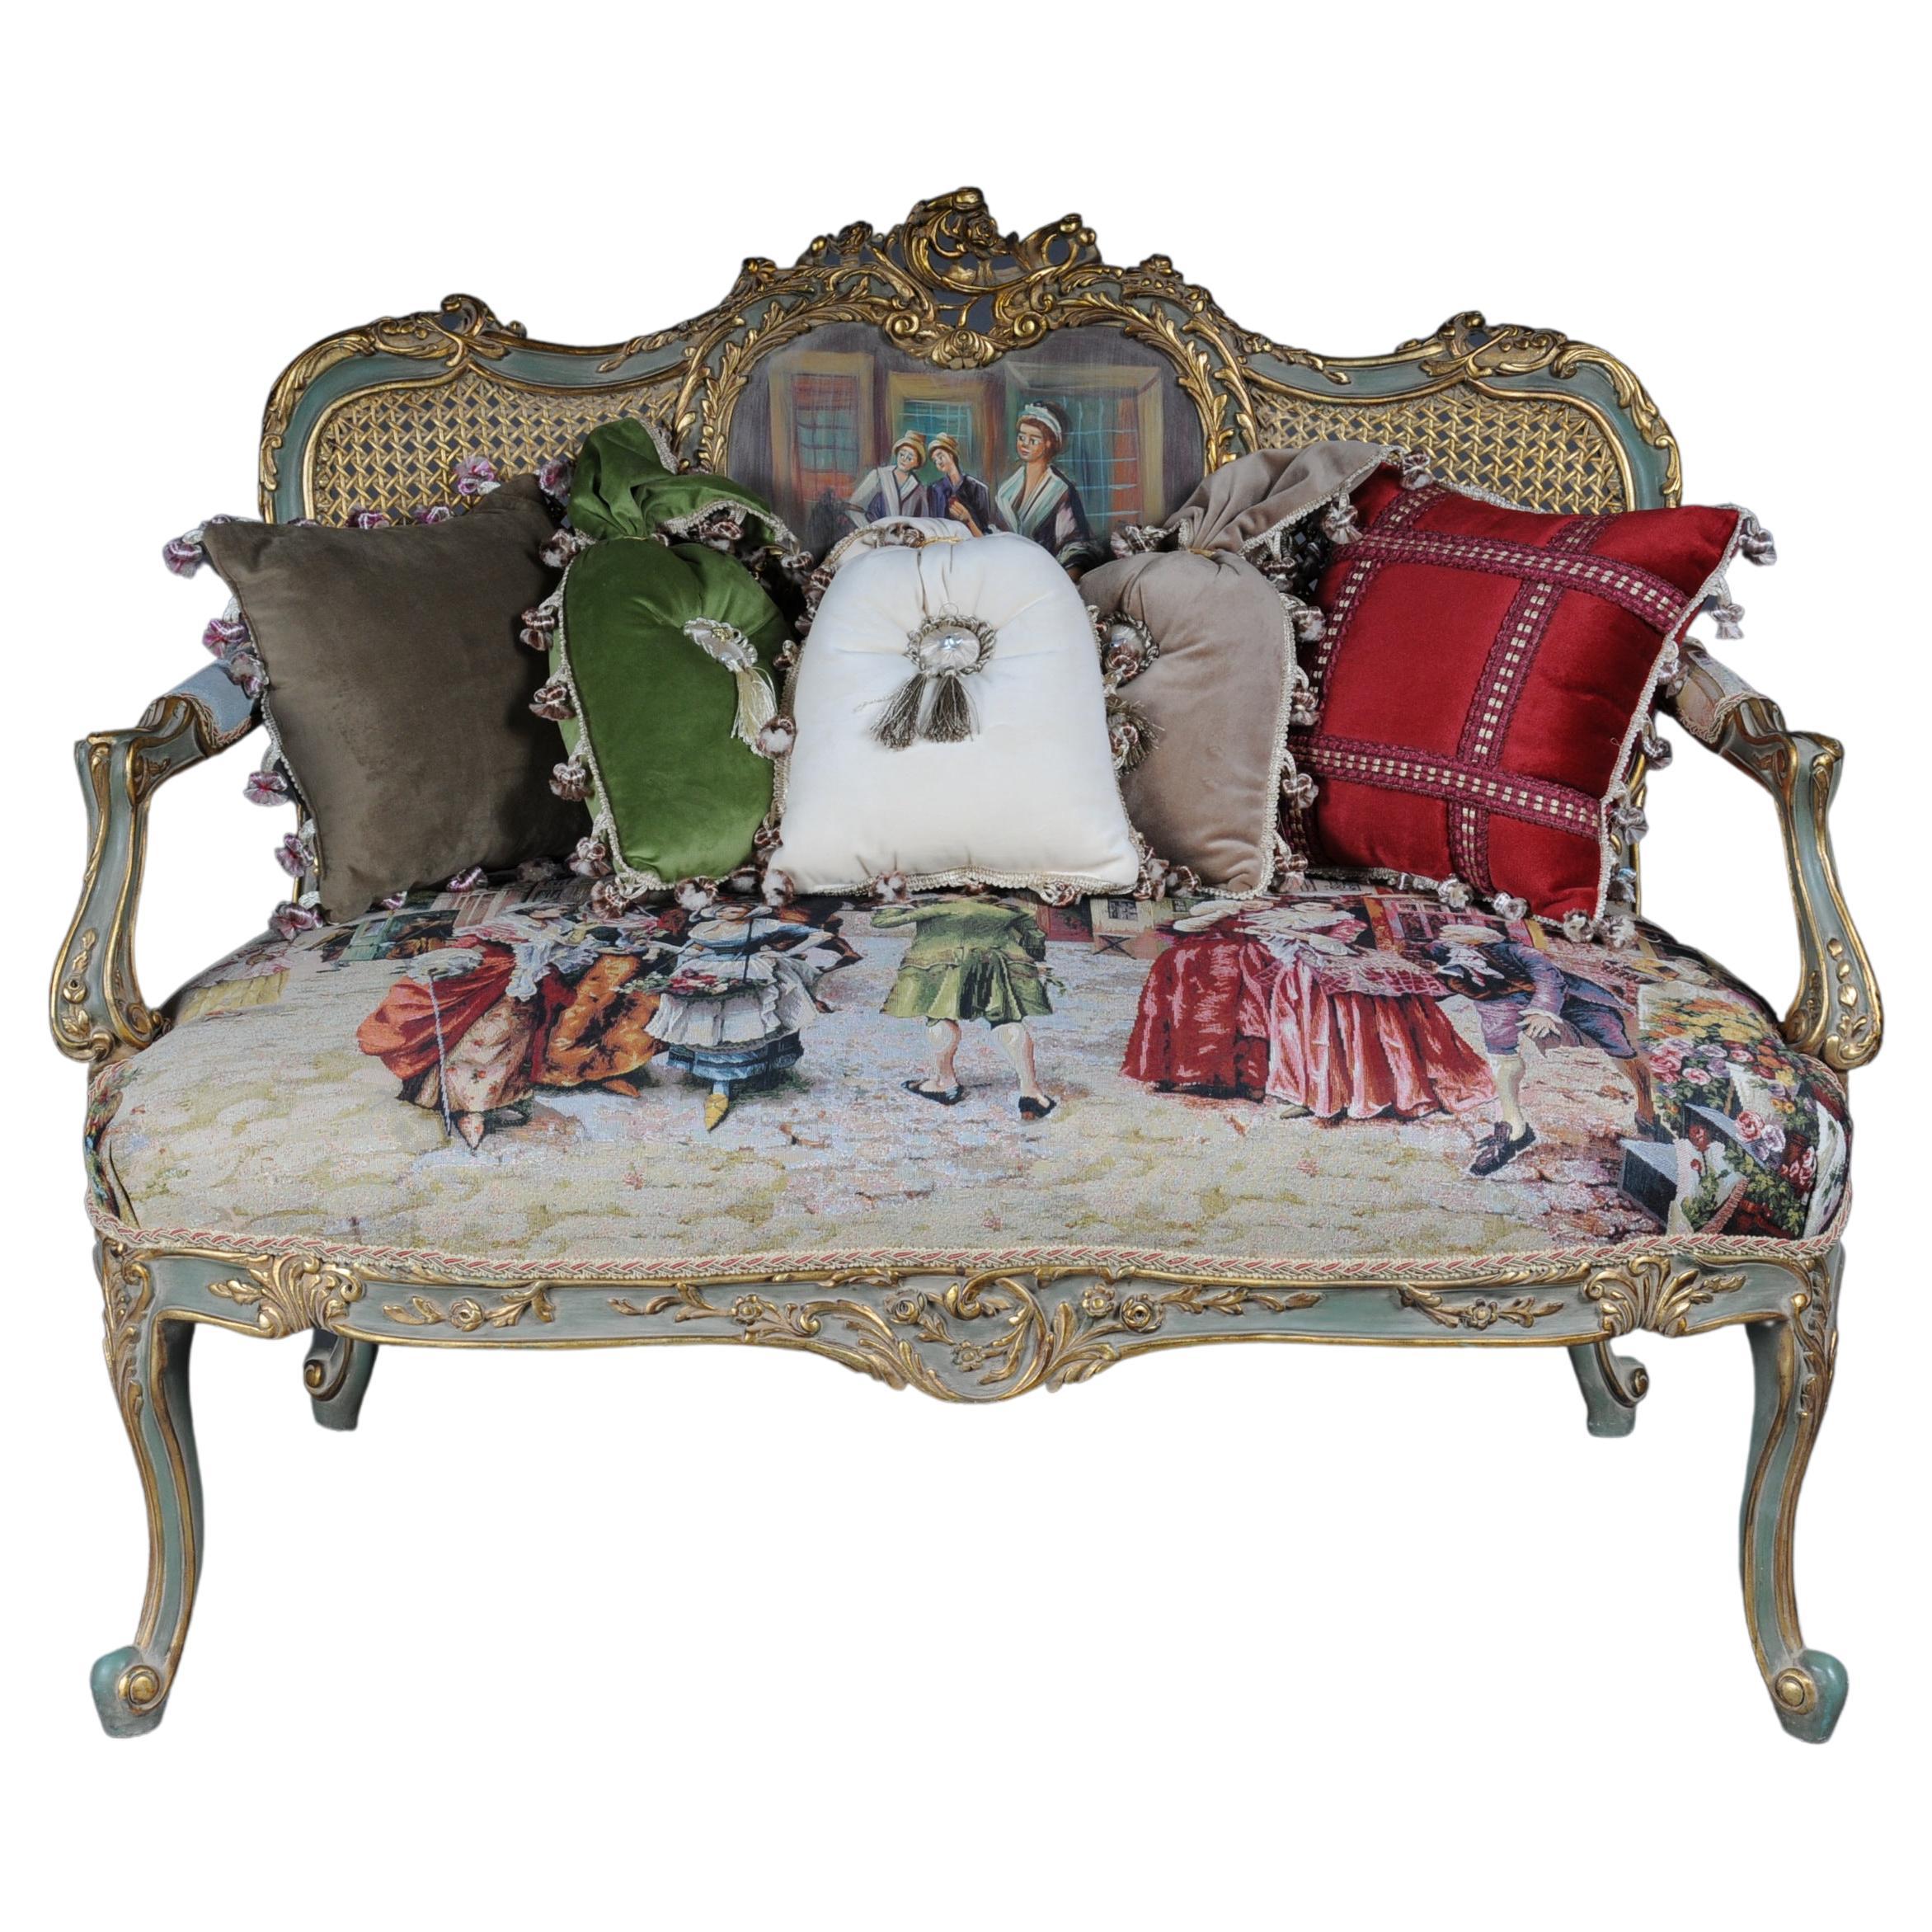 Magnifique canapé, pochette, sac à main de style rococo ou Louis XV du XXe siècle